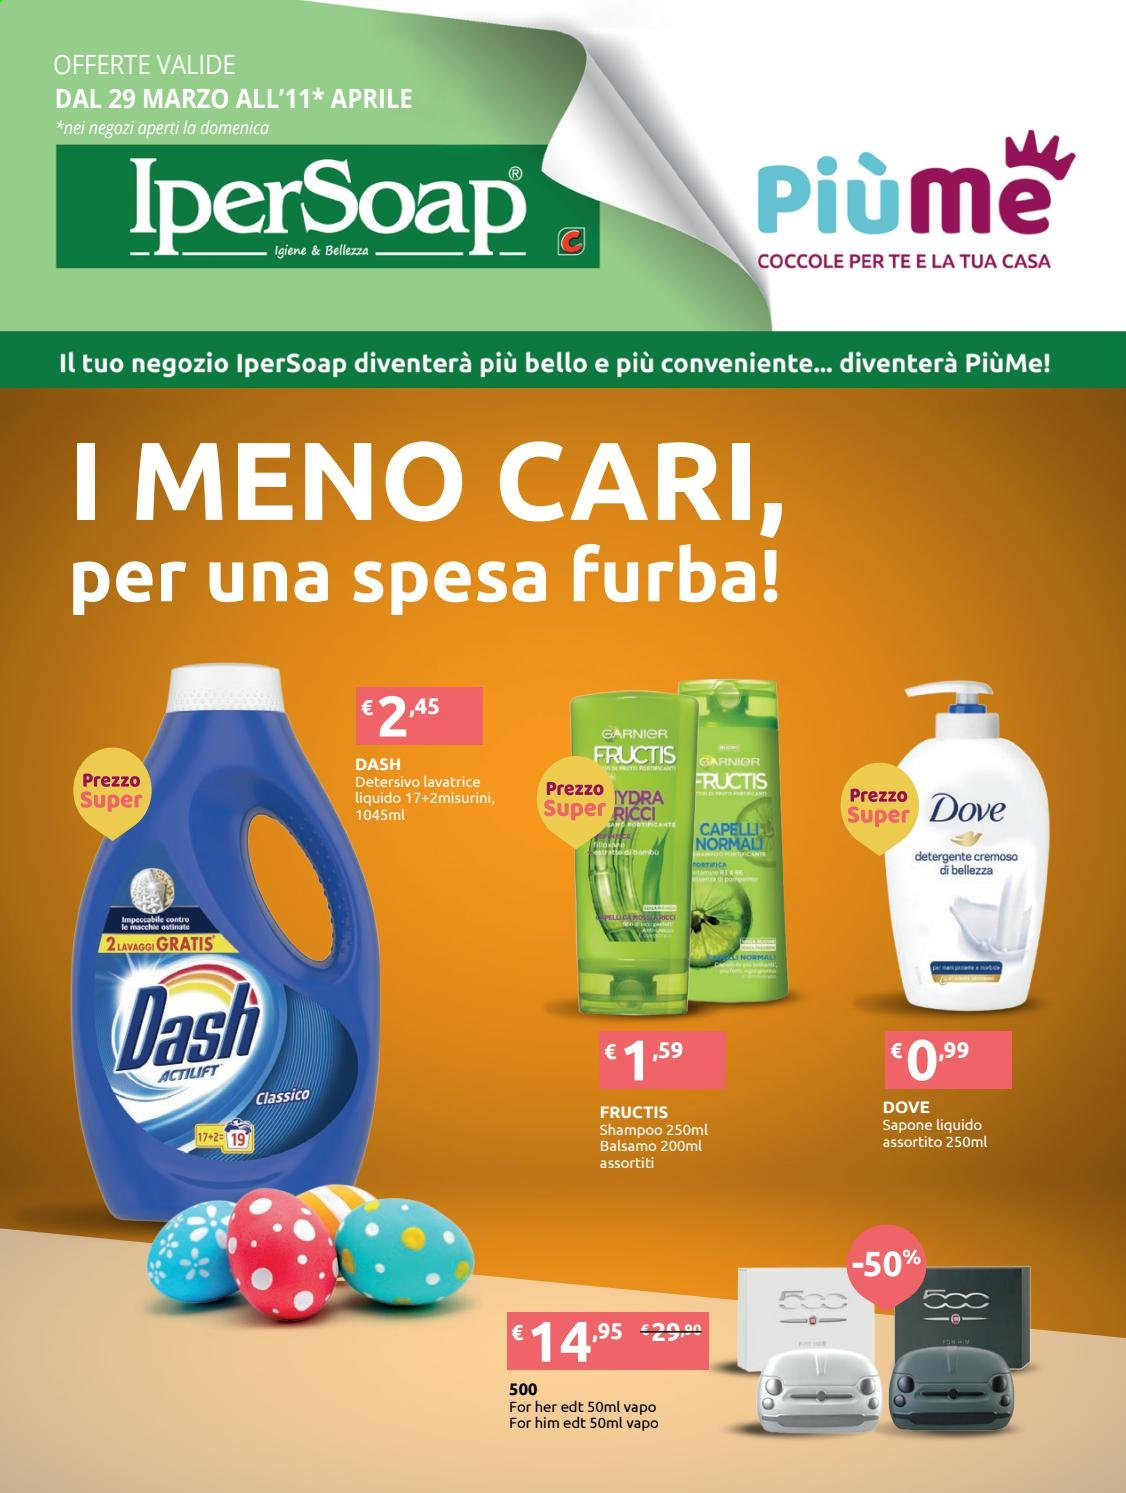 thumbnail - Volantino IperSoap - 29/3/2021 - 11/4/2021 - Prodotti in offerta - Garnier, detersivo per lavatrice, Dash, sapone, sapone liquido, balsamo, shampoo, Fructis, Eau de Toilette. Pagina 1.